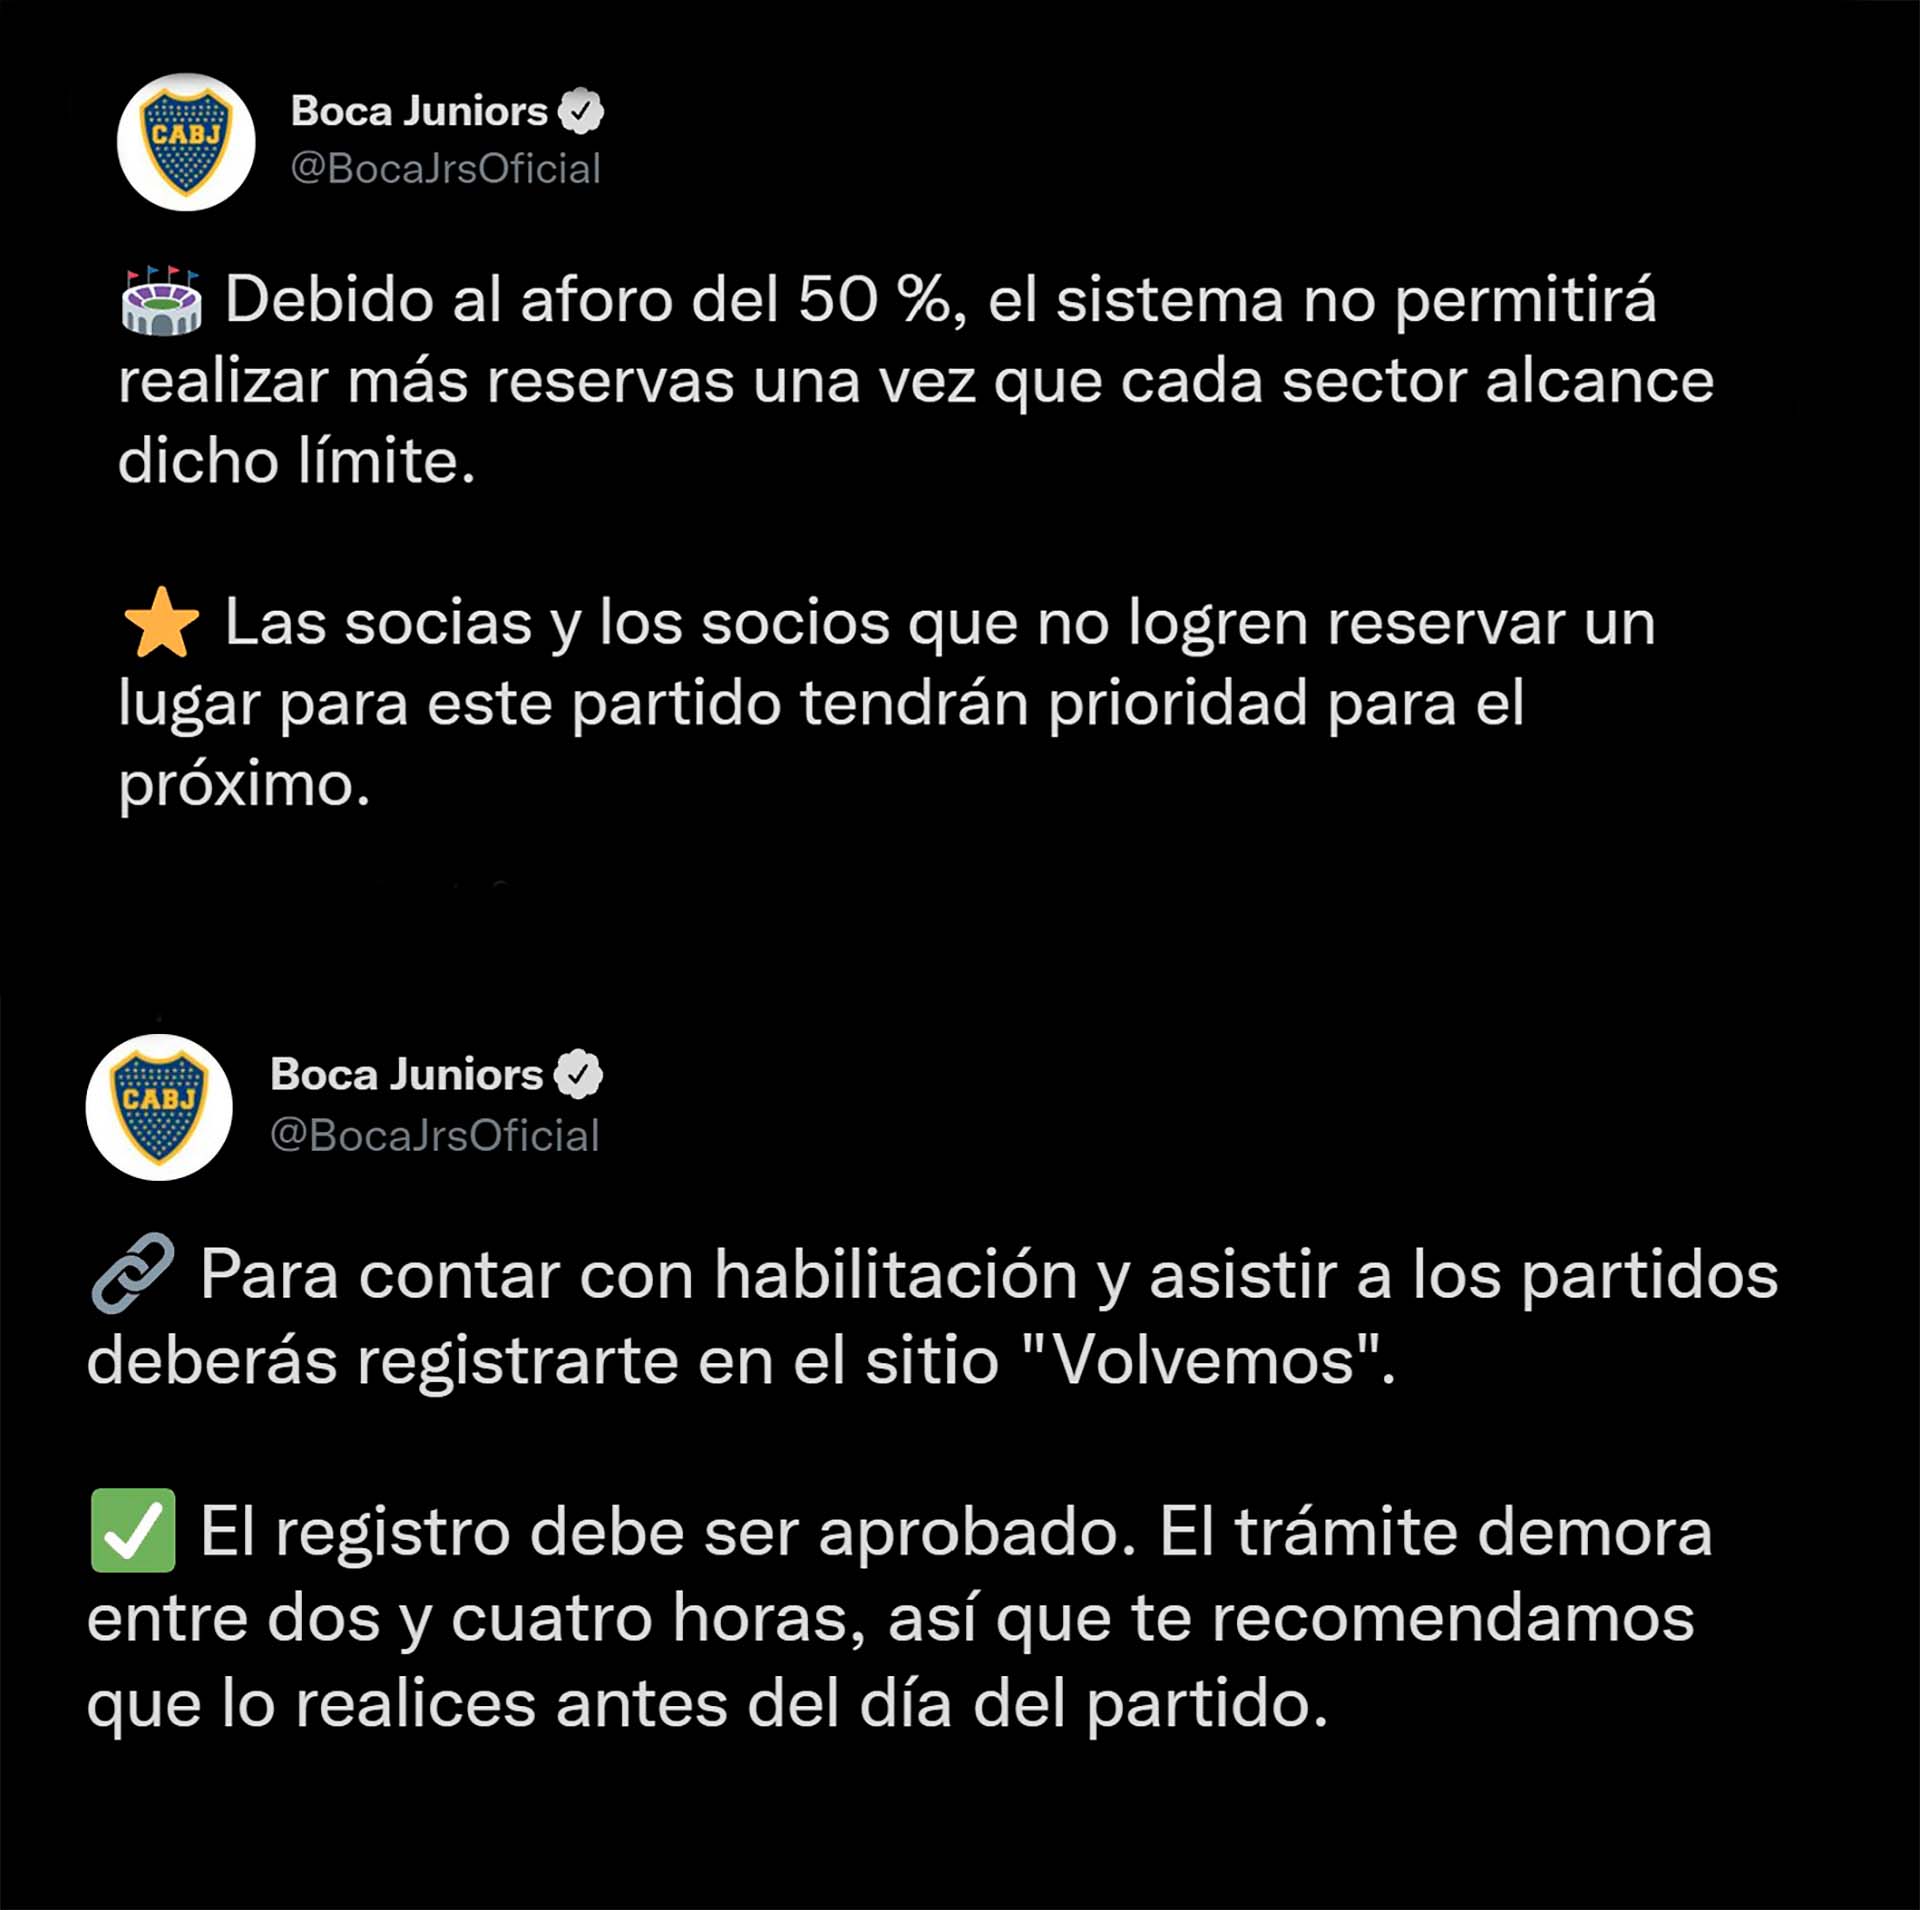 Las notificaciones oficiales de Boca Juniors